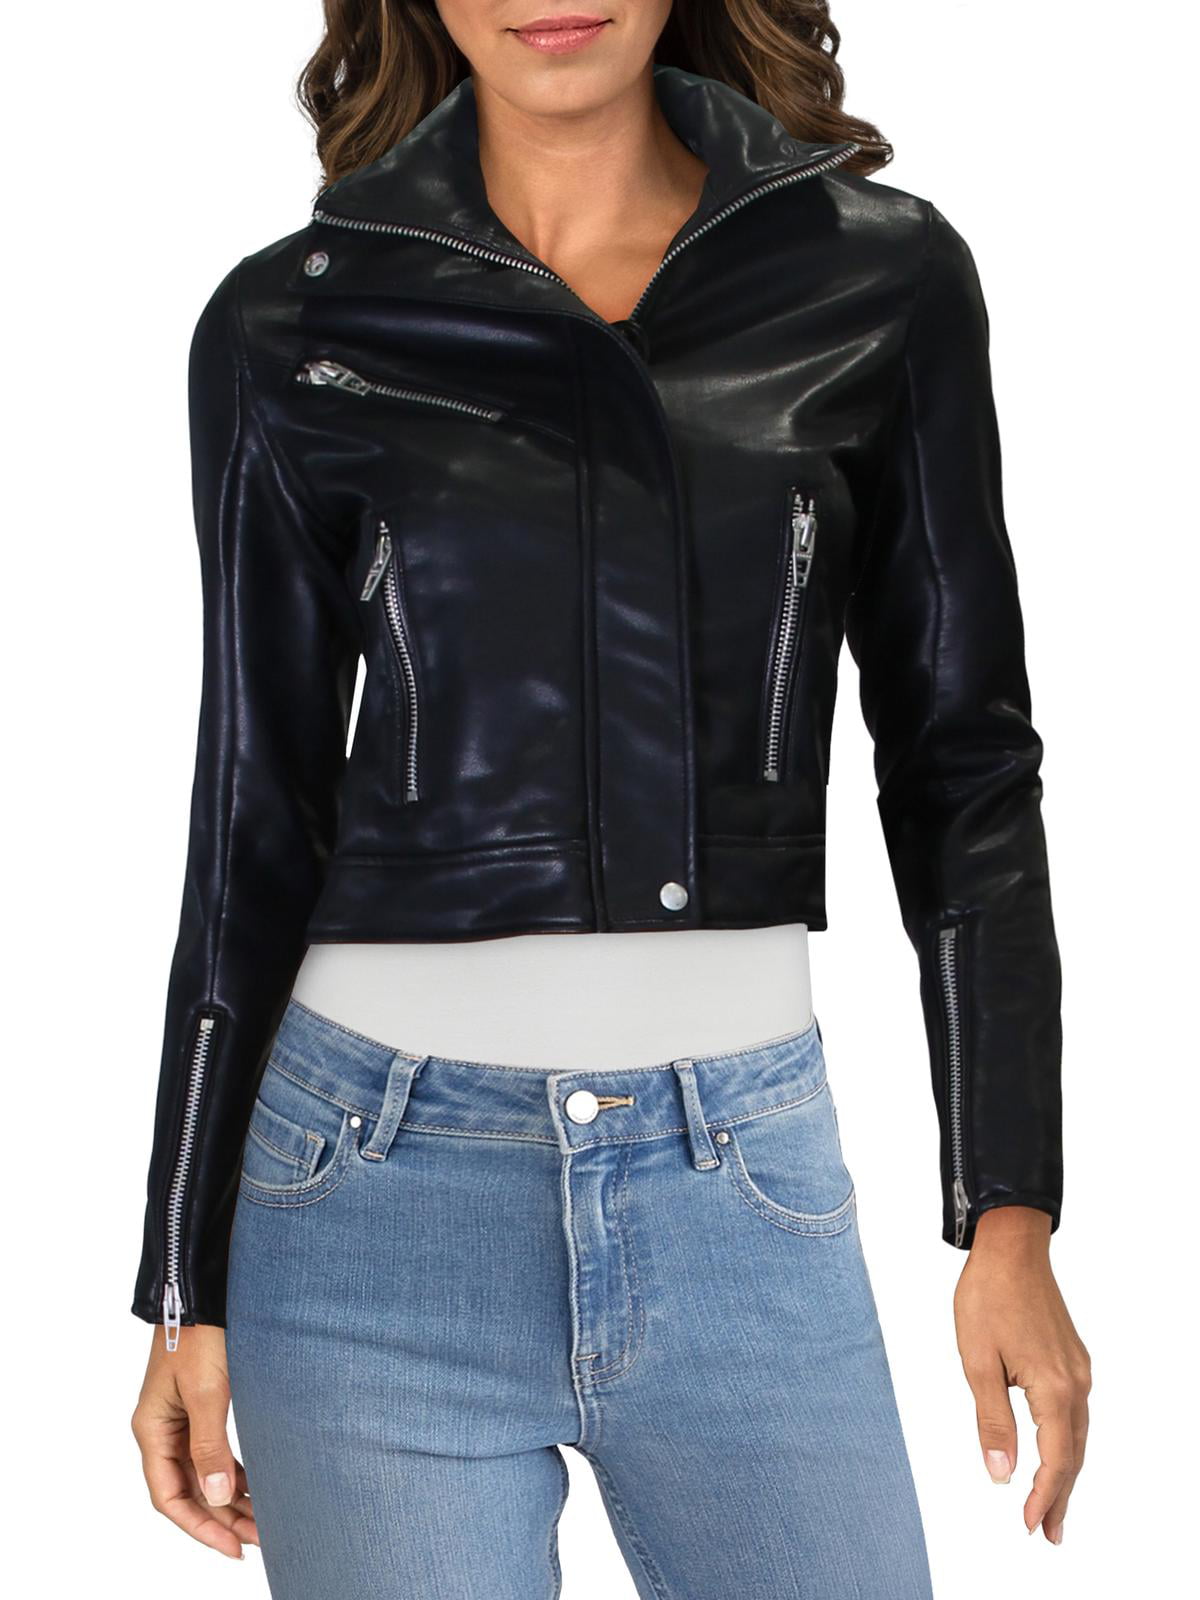 BLANKNYC Womens Vegan Leather Jacket Jacket